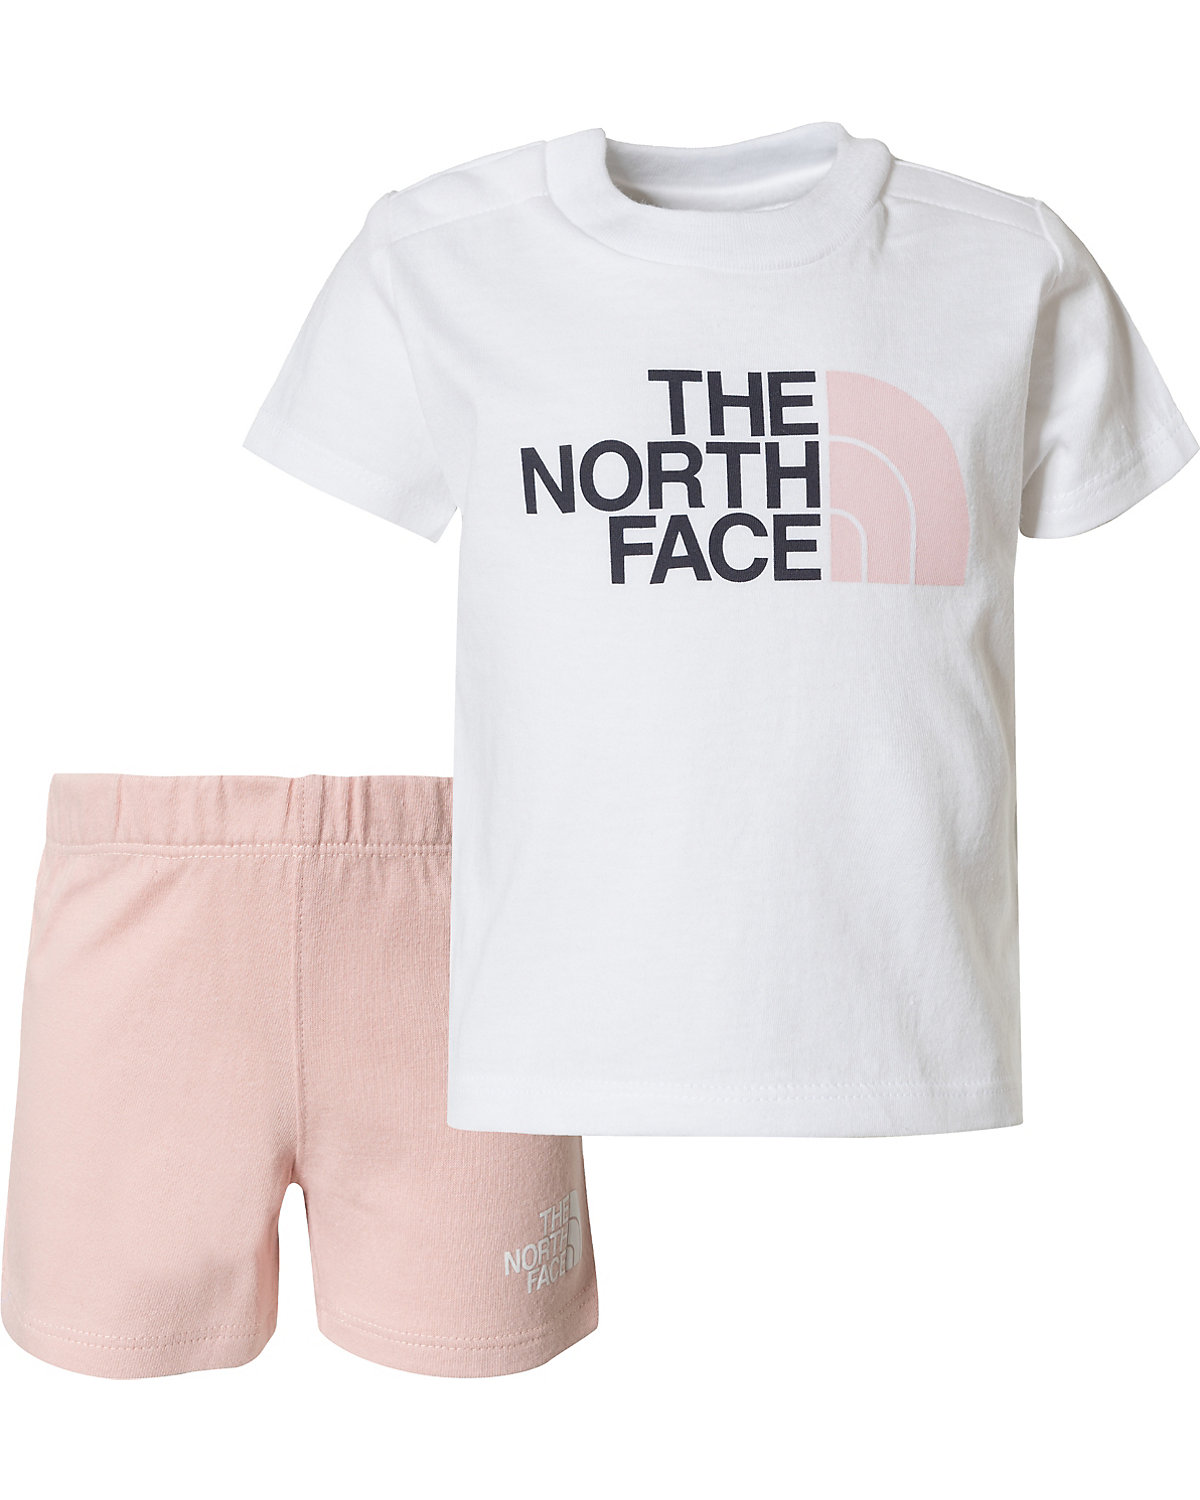 THE NORTH FACE Baby Set T-Shirt + Shorts SUMMER